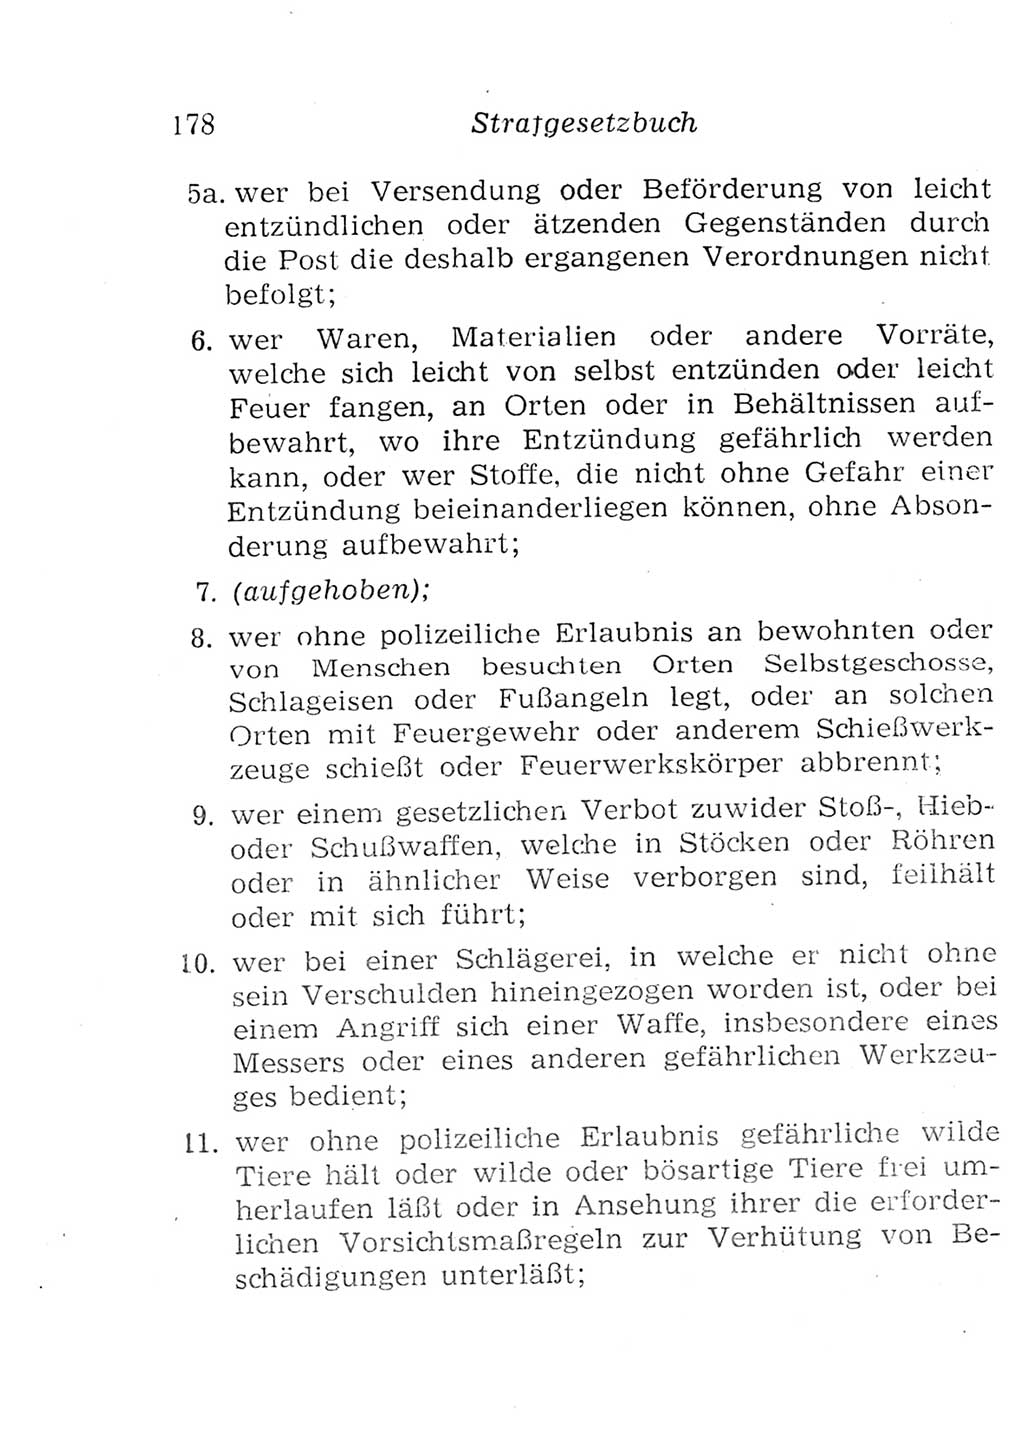 Strafgesetzbuch (StGB) und andere Strafgesetze [Deutsche Demokratische Republik (DDR)] 1957, Seite 178 (StGB Strafges. DDR 1957, S. 178)